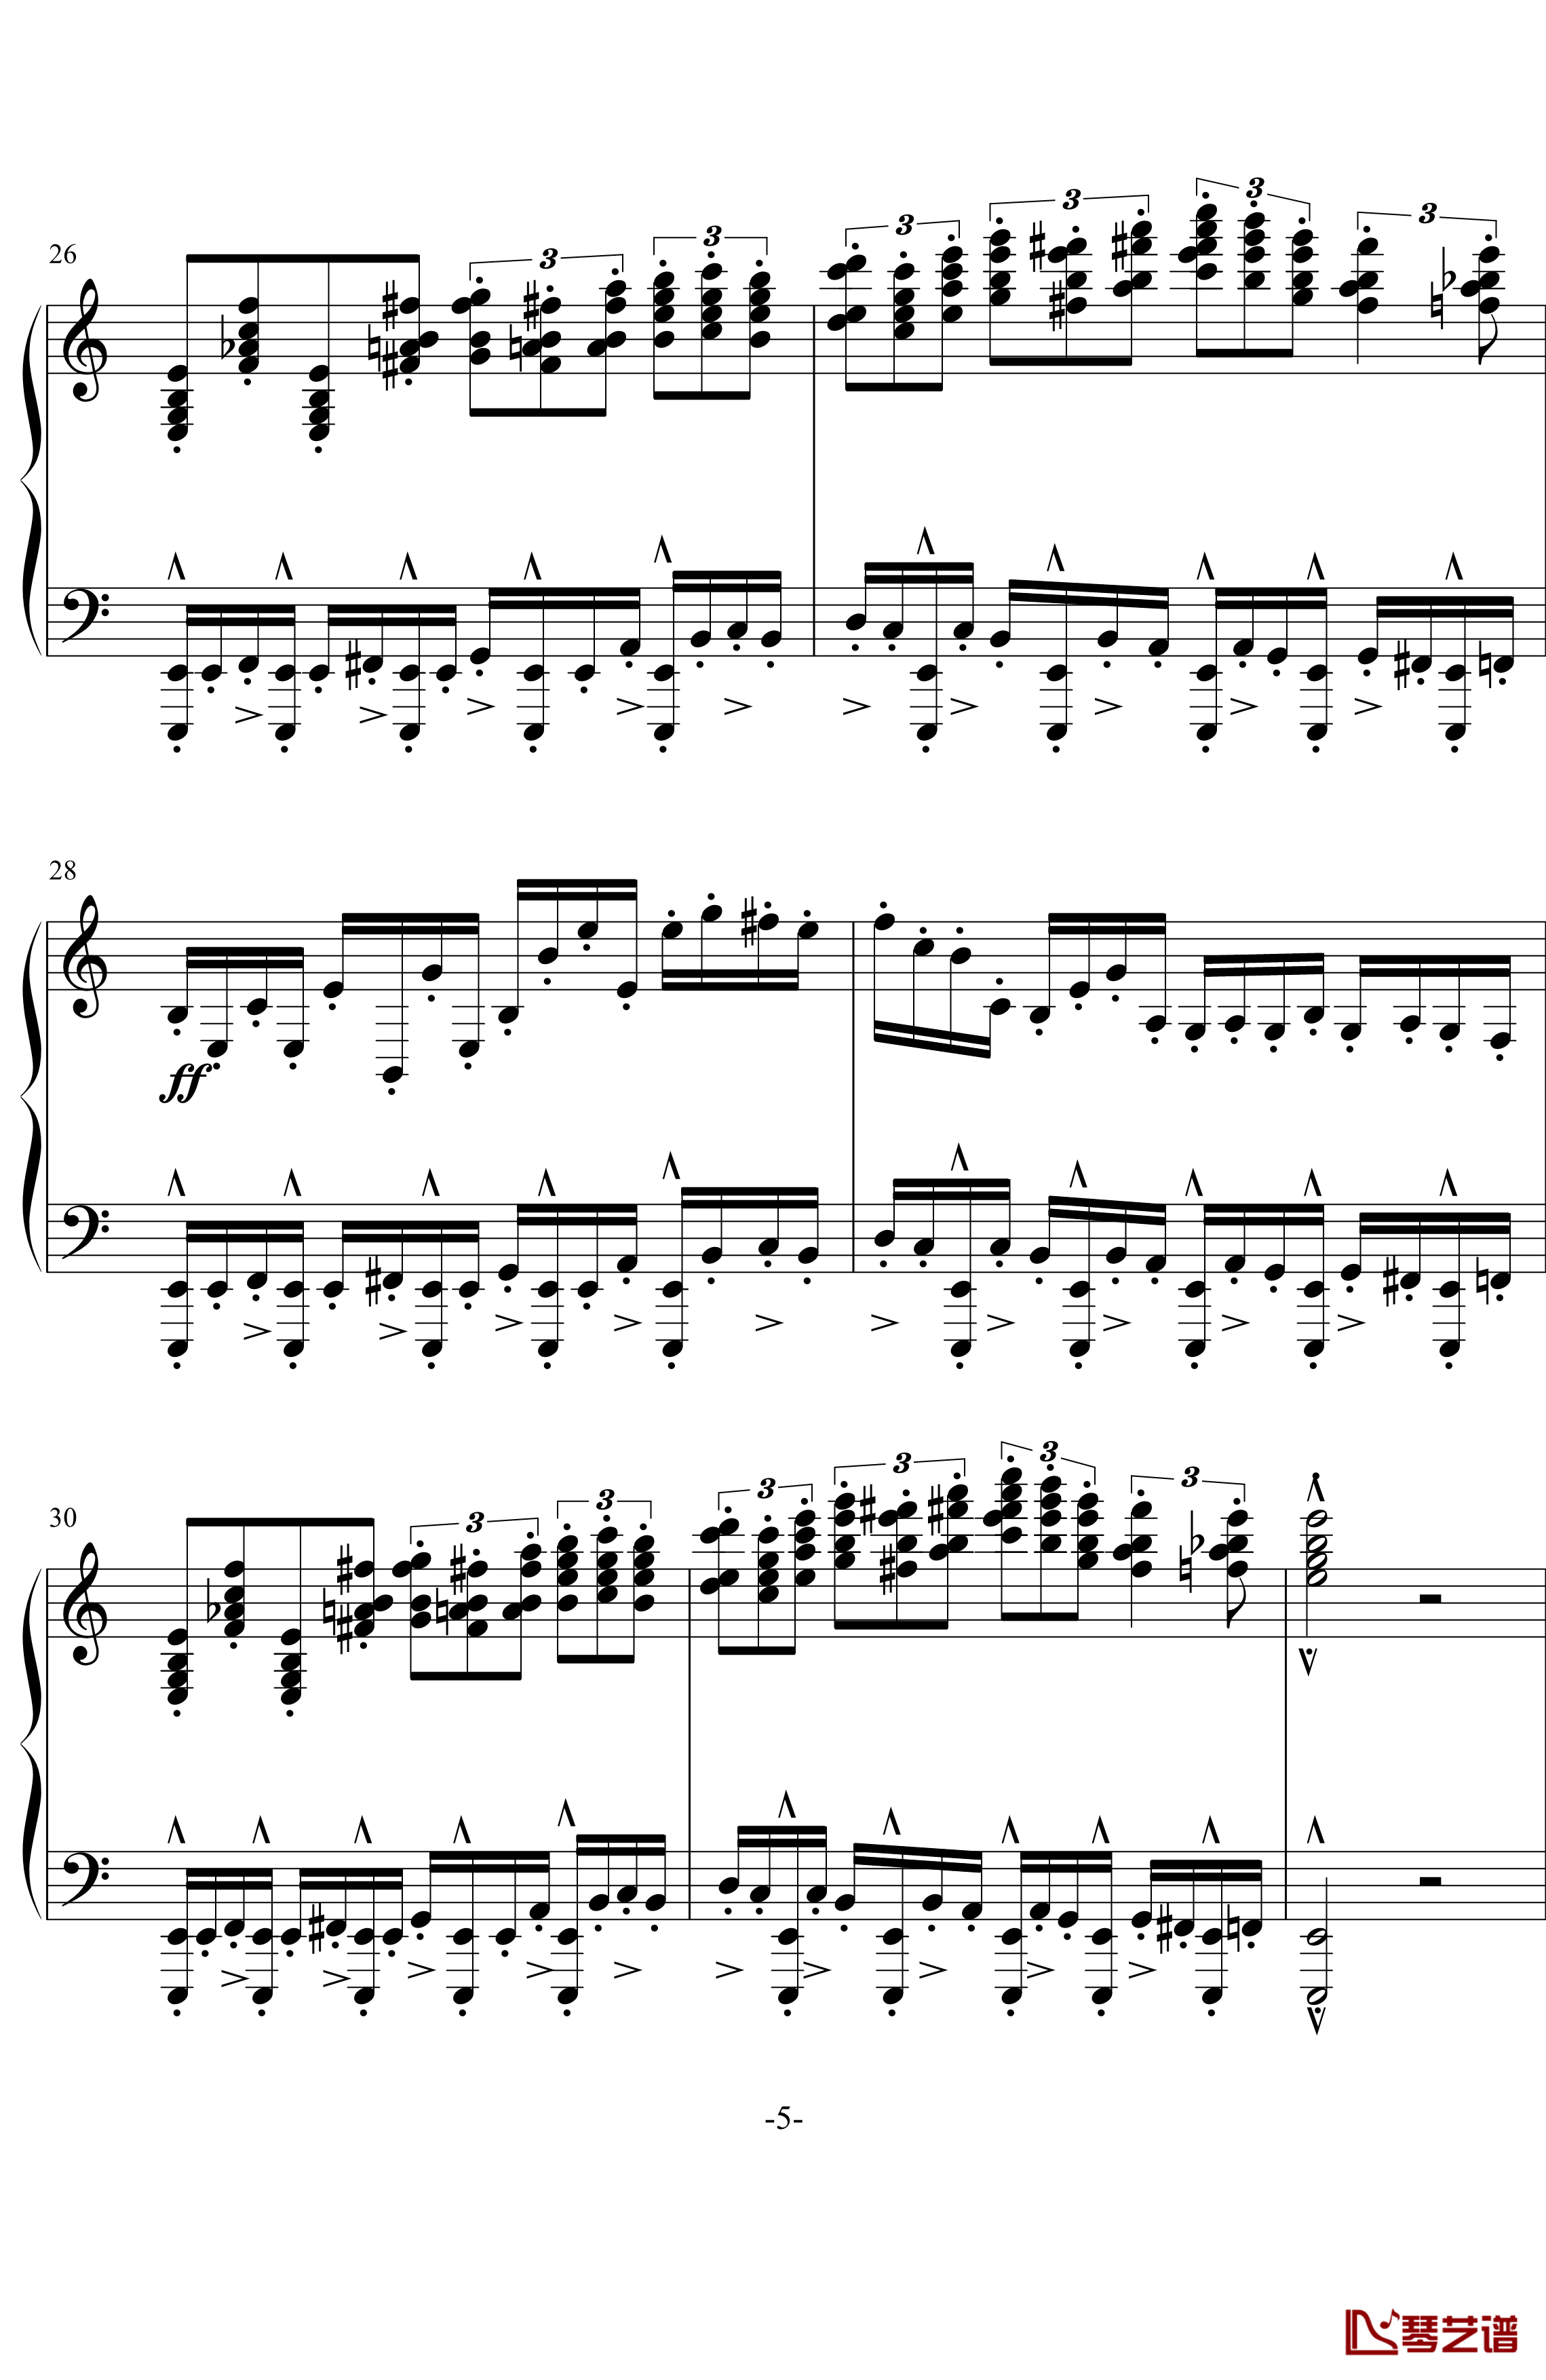 龙卷风钢琴谱-超级练习曲-wang5549034415